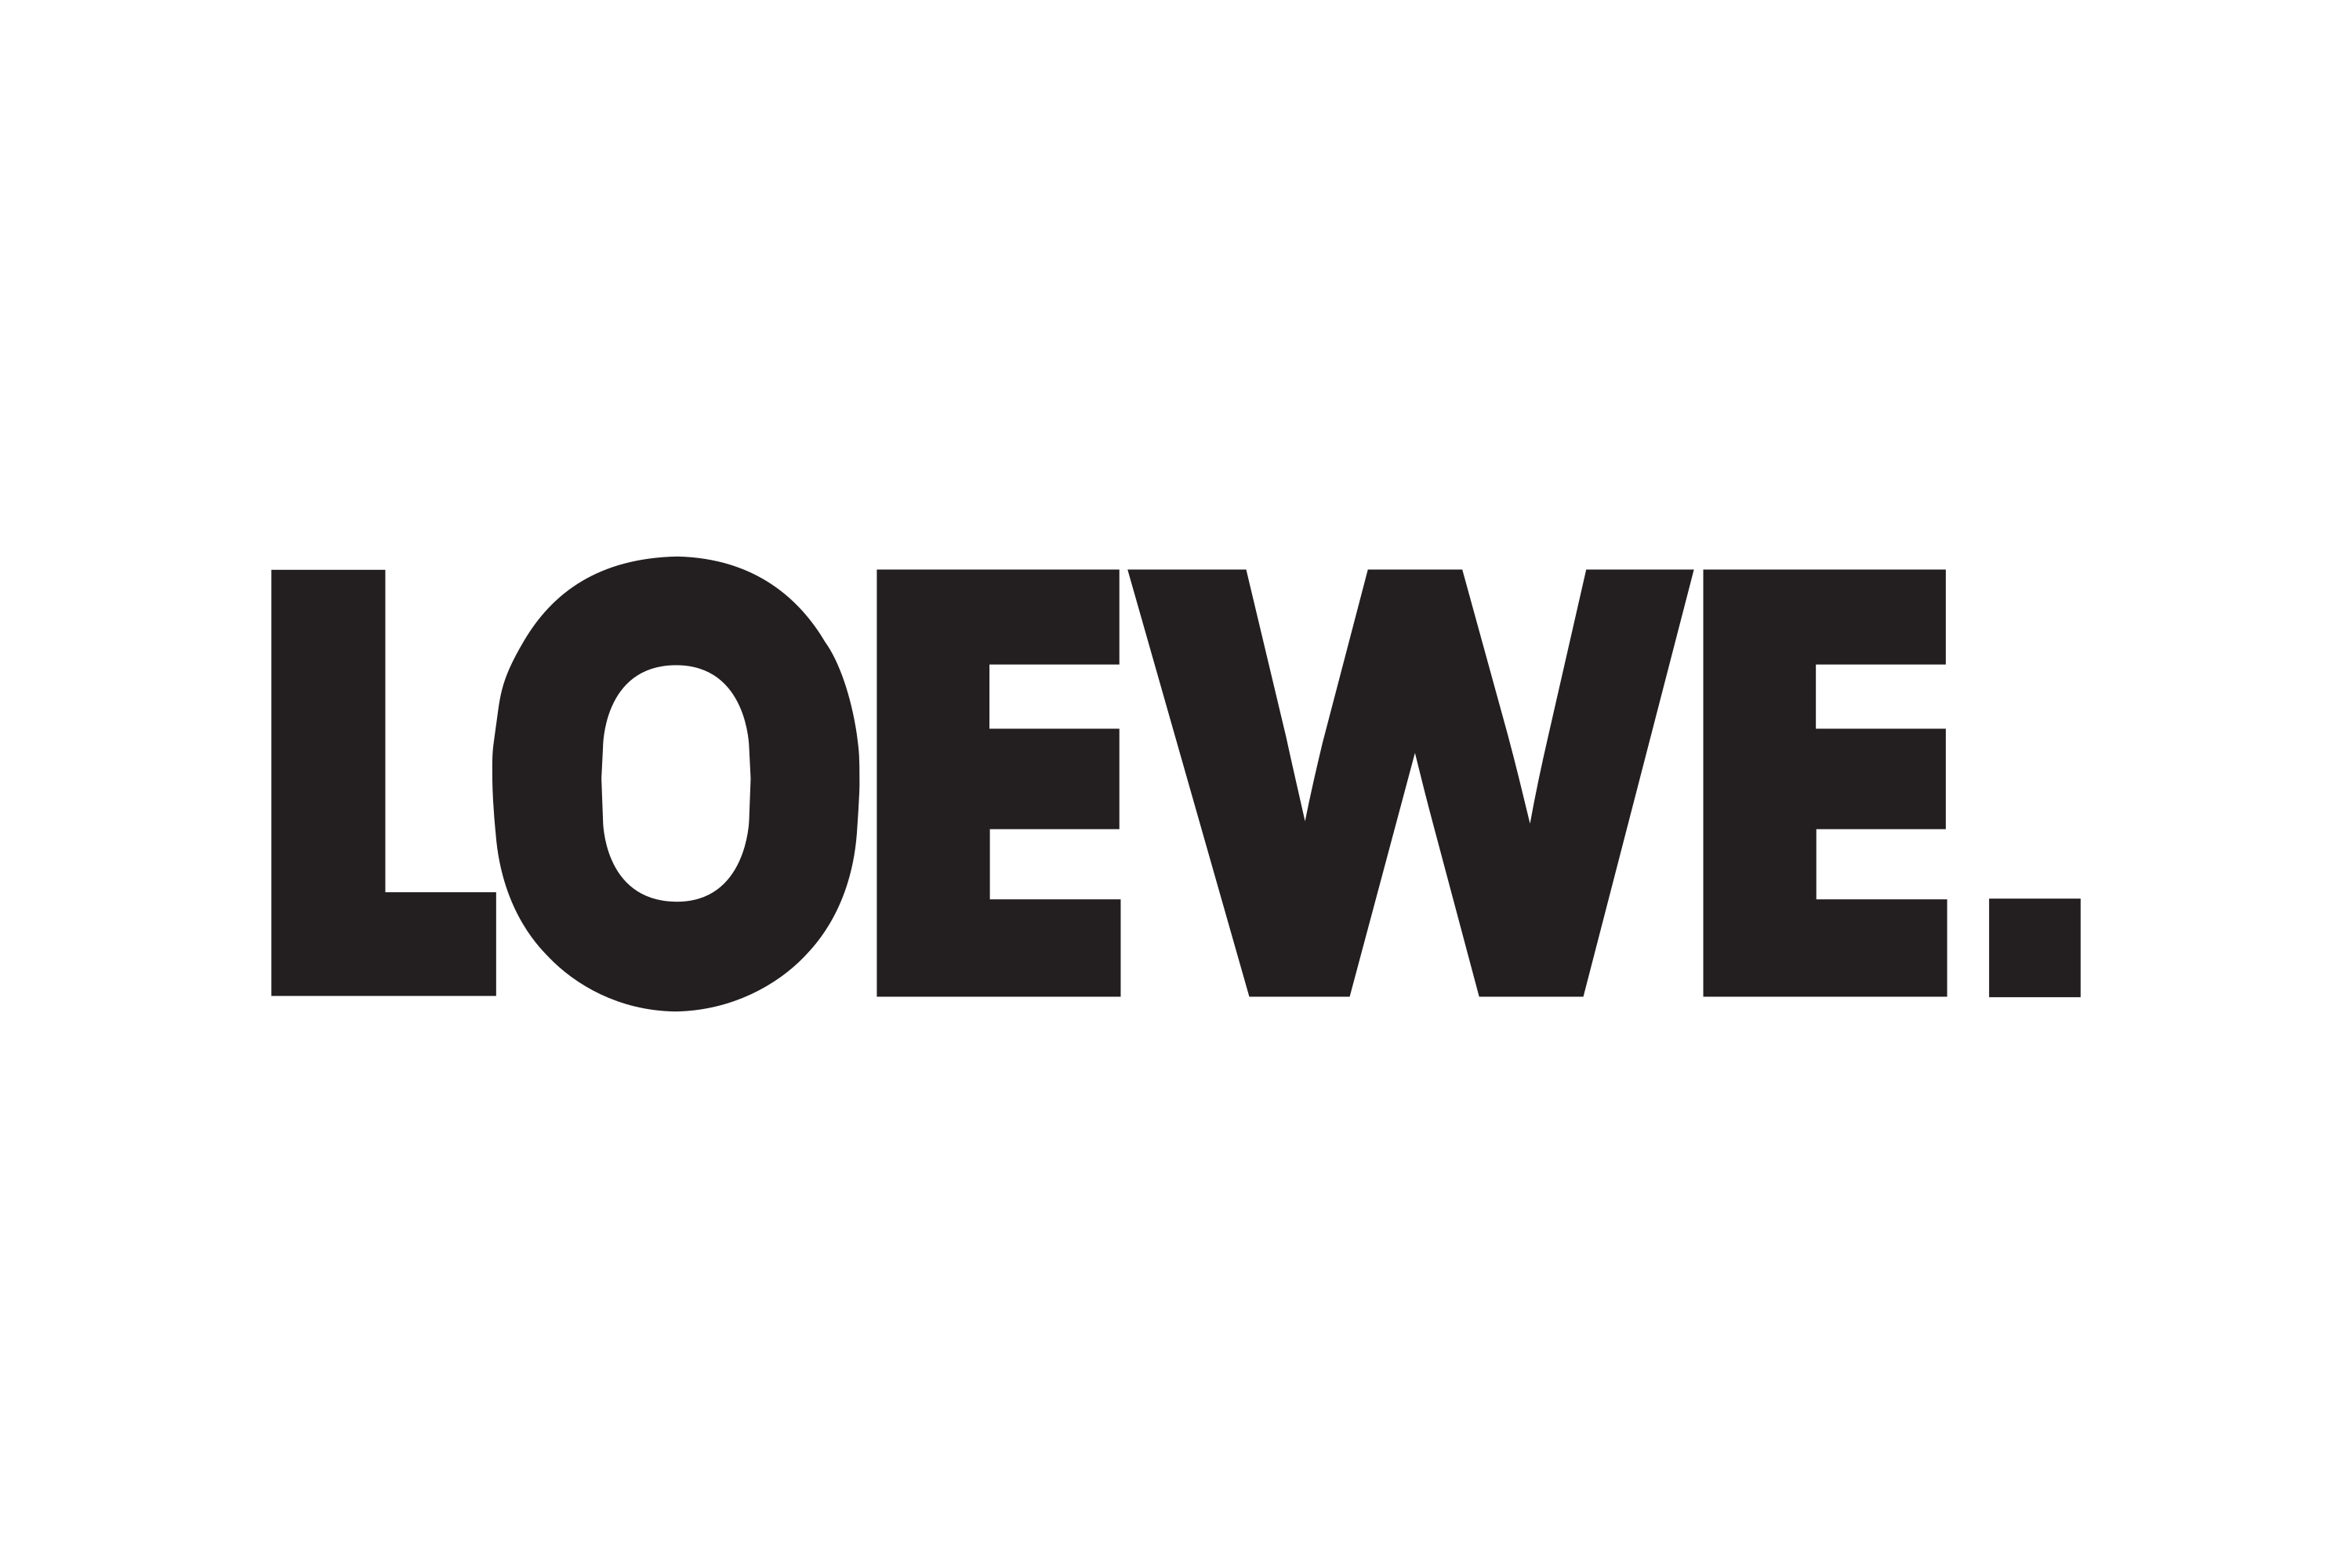 Download Loewe AG Logo in SVG Vector or PNG File Format - Logo.wine